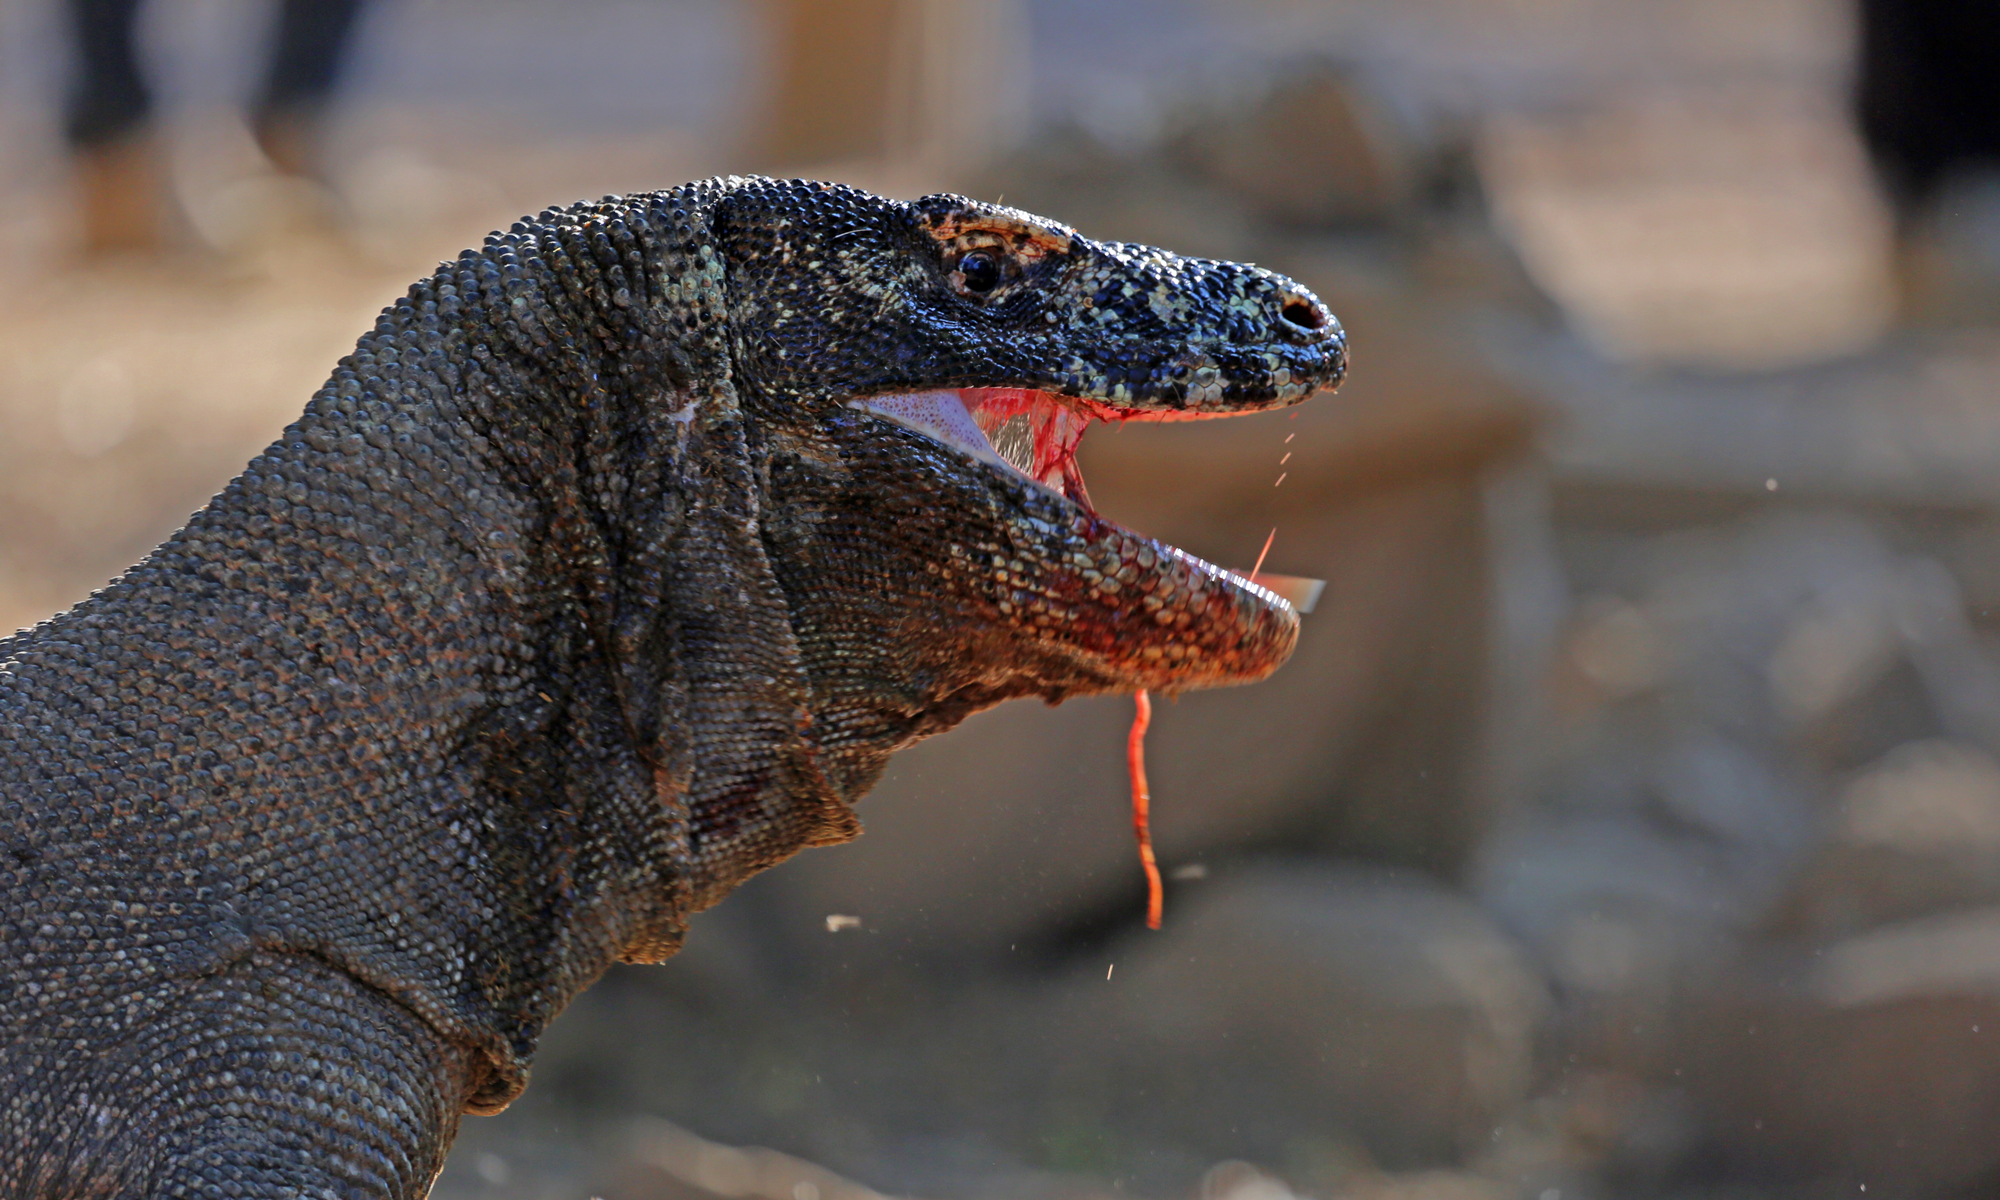 Hãy cùng khám phá thế giới của những con rồng Komodo khổng lồ, chúng là một trong những sinh vật lớn nhất của thế giới động vật và cực kì hấp dẫn!